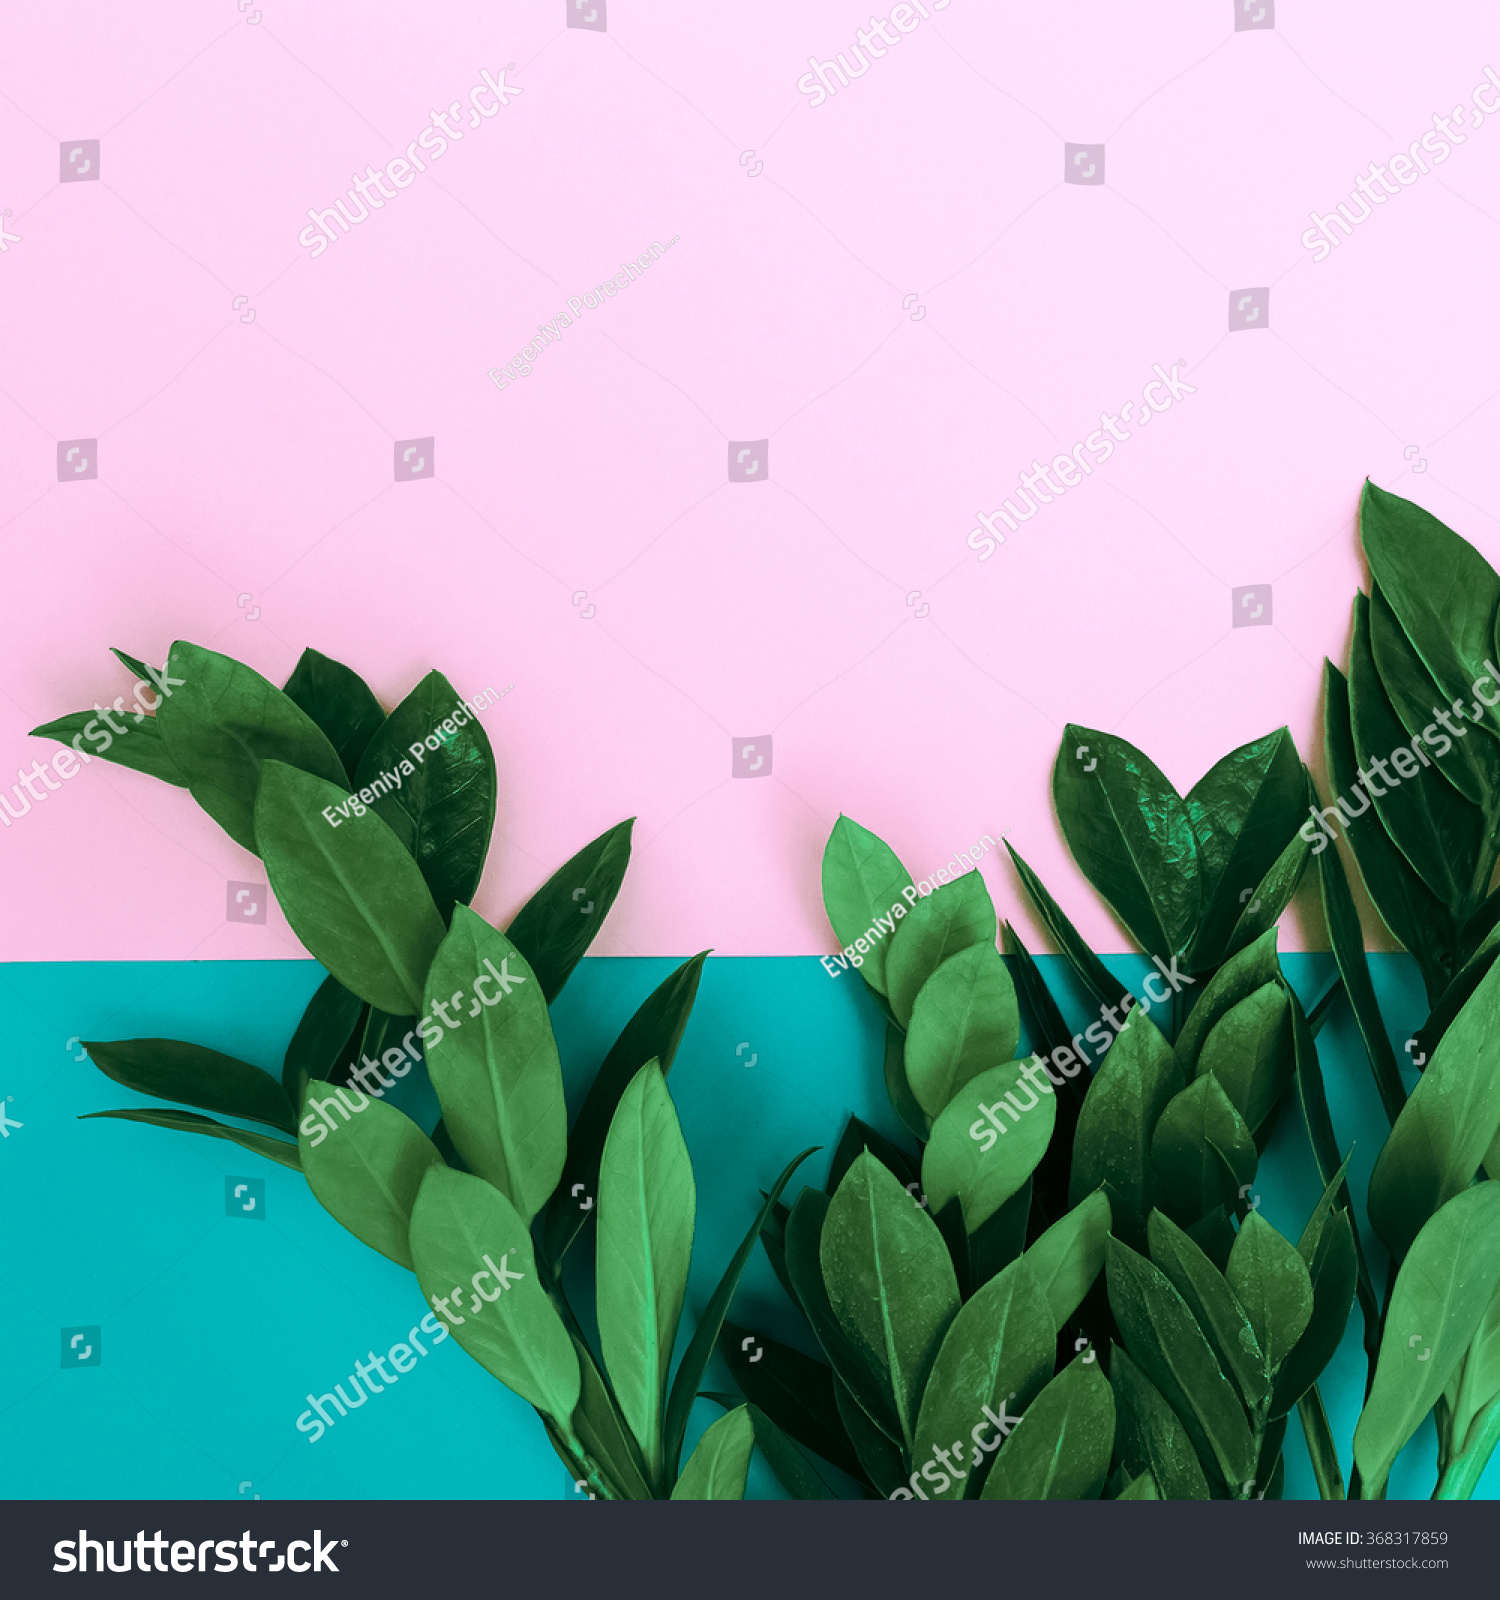 Green Plants On Stylish Background Minimalist Stock Photo & Image ...